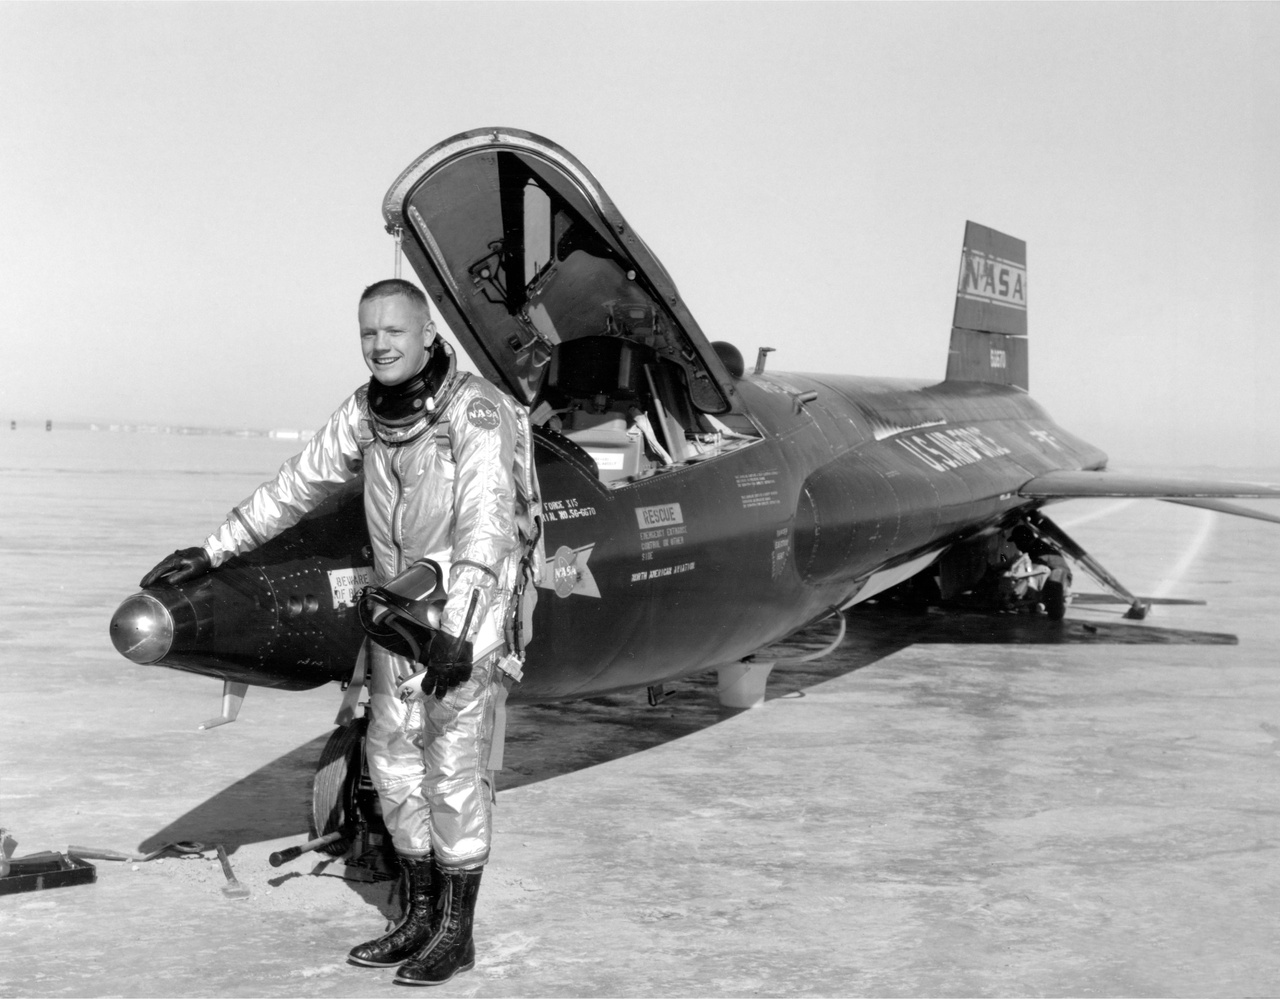 Armstrong és a 66670 lastromjelű X-15-ös rakétarepülőgép, ami a program első prototípusa volt (a gép jelenleg a Smithsonian Intézet washingtoni múzeumában van kiállítva). A filmben ábrázolt picit túldramatizált jelenet 1962. április 22-én történt, javarészt azért valóban úgy, ahogy a forgatókönyv alapján a filmbe került. A film alapjául szolgáló életrajzi könyv (James R. Hansen: First Man, chapter 15: Higher resolve) szerint Armstrong aznap 63 kilométeres magasságig emelkedett a géppel, és ereszkedés közben párszor "lepattant" a légkörről, de ez szándékos volt, mivel Armstrongnak egy speciális, gyorsulási terhelést mérő műszer tesztelése volt a feladata.